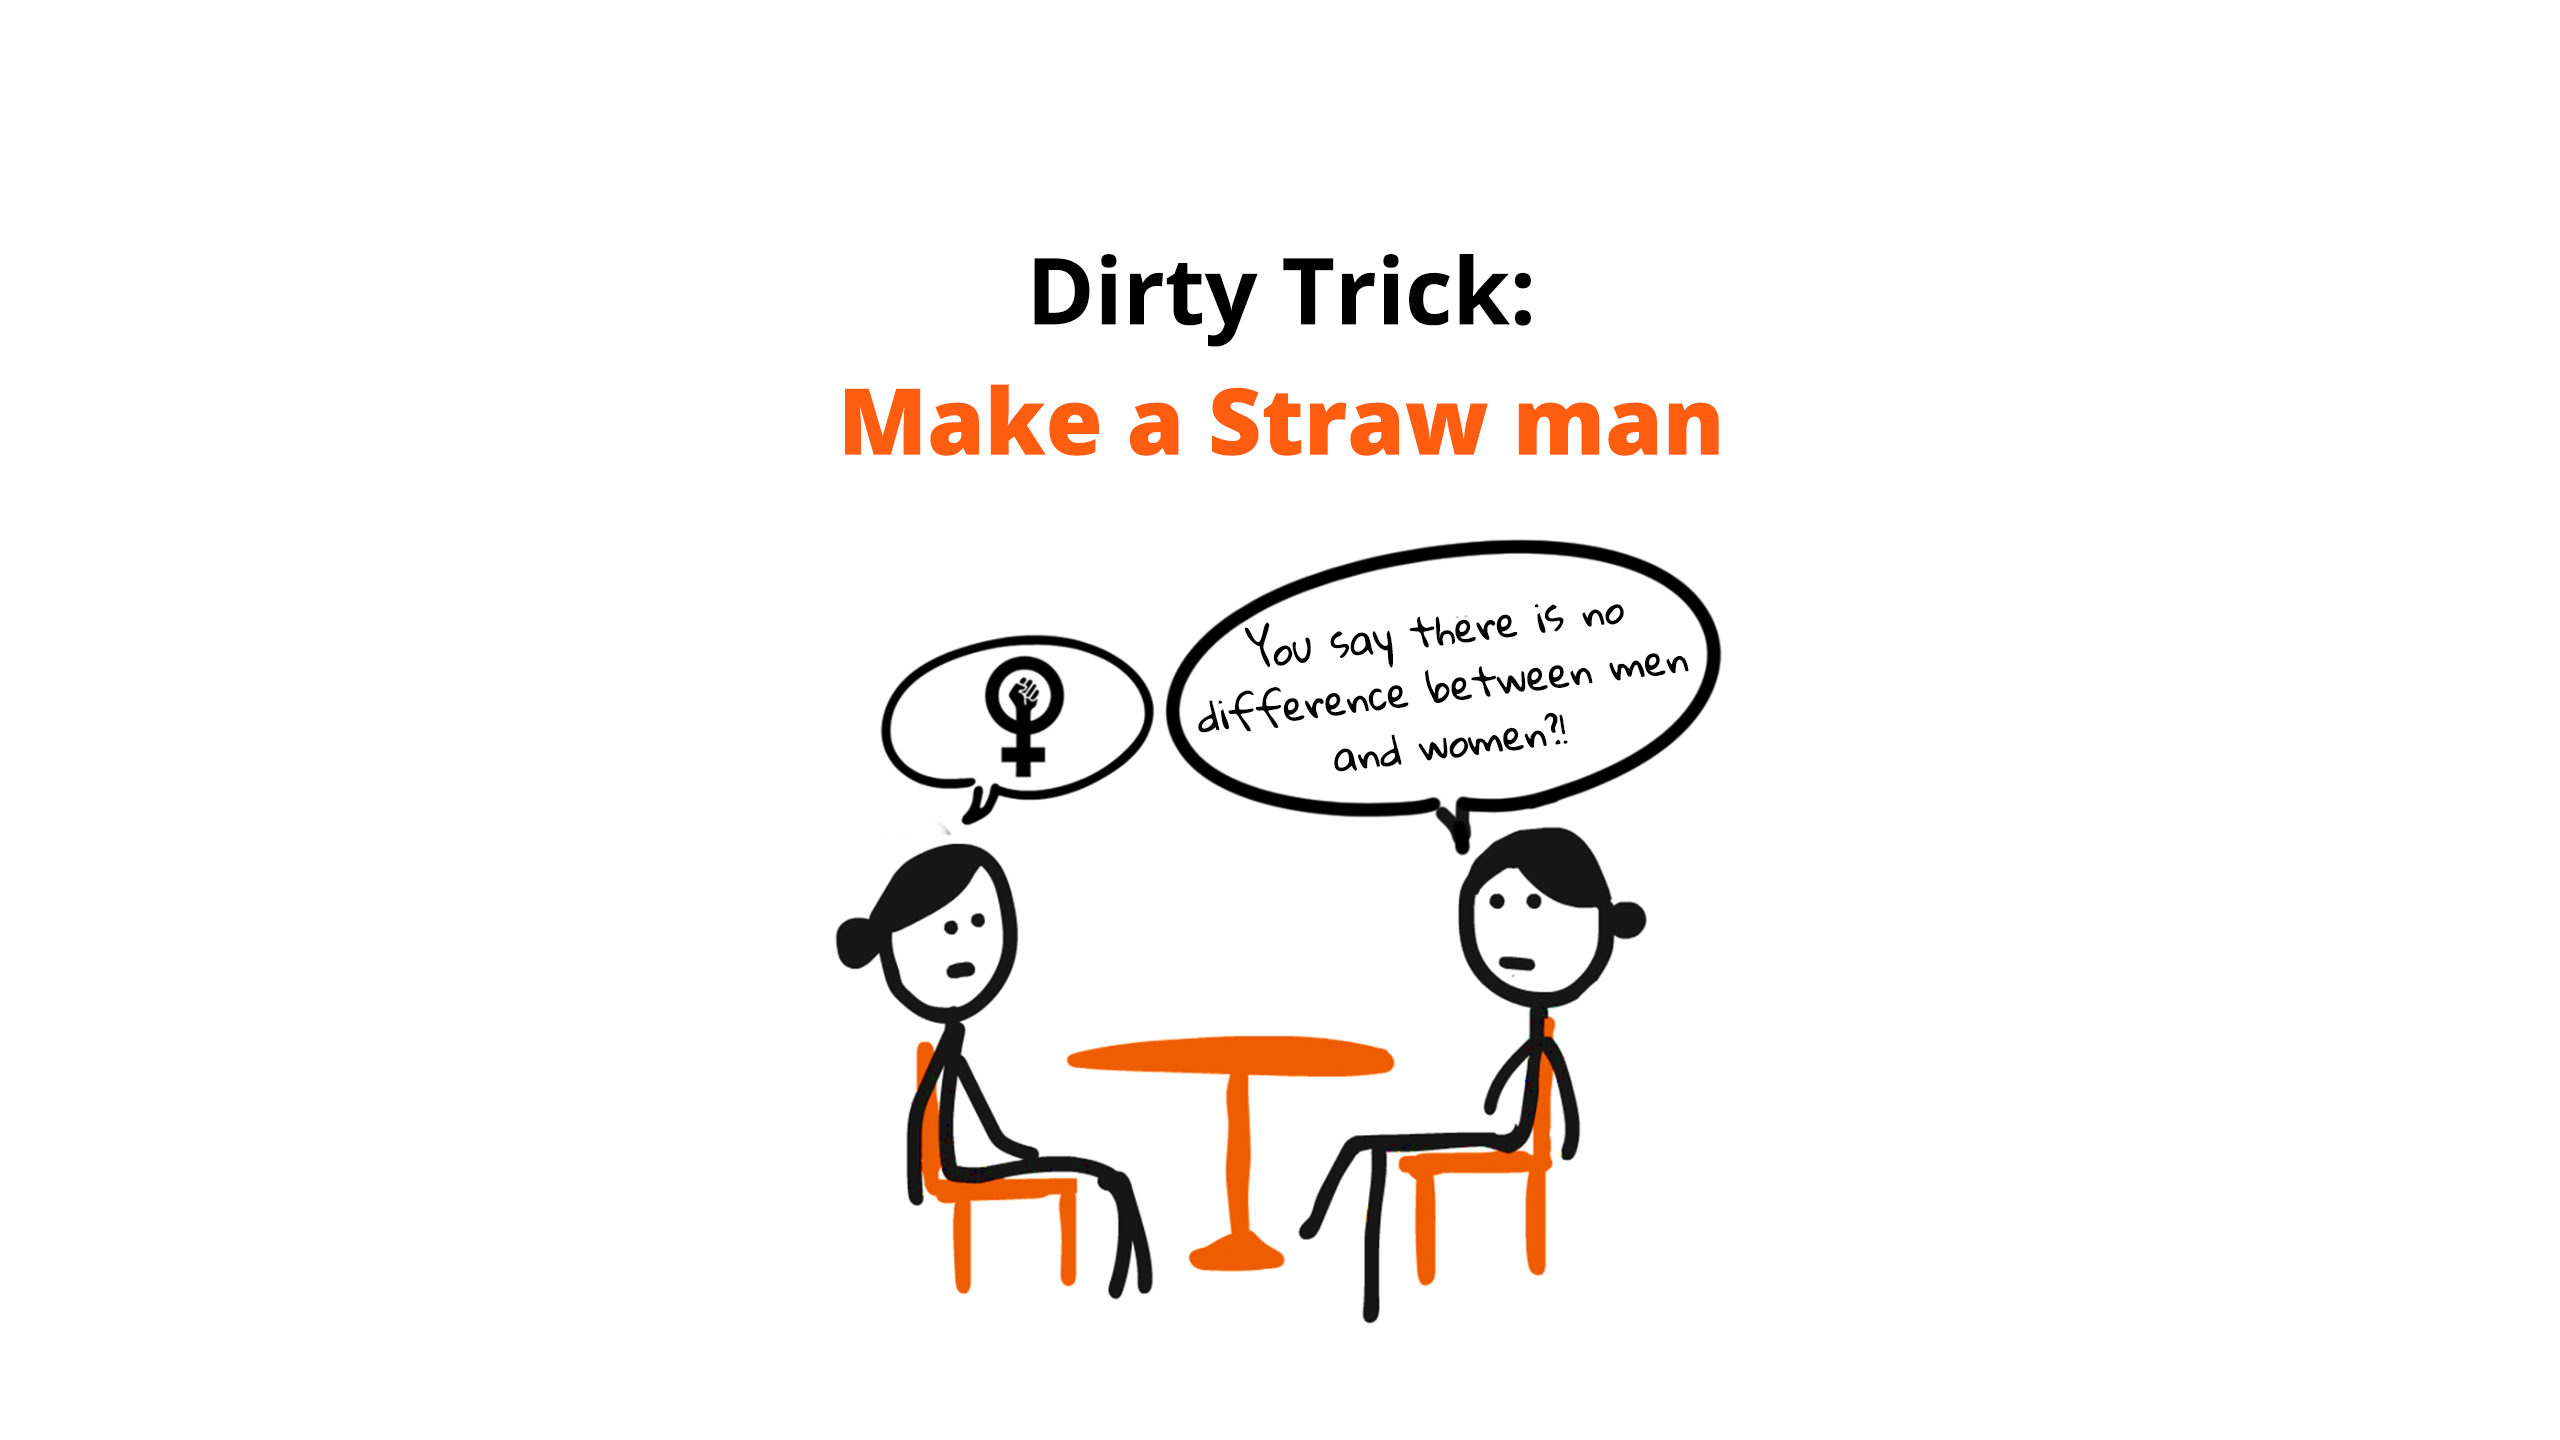 straw man fallacy